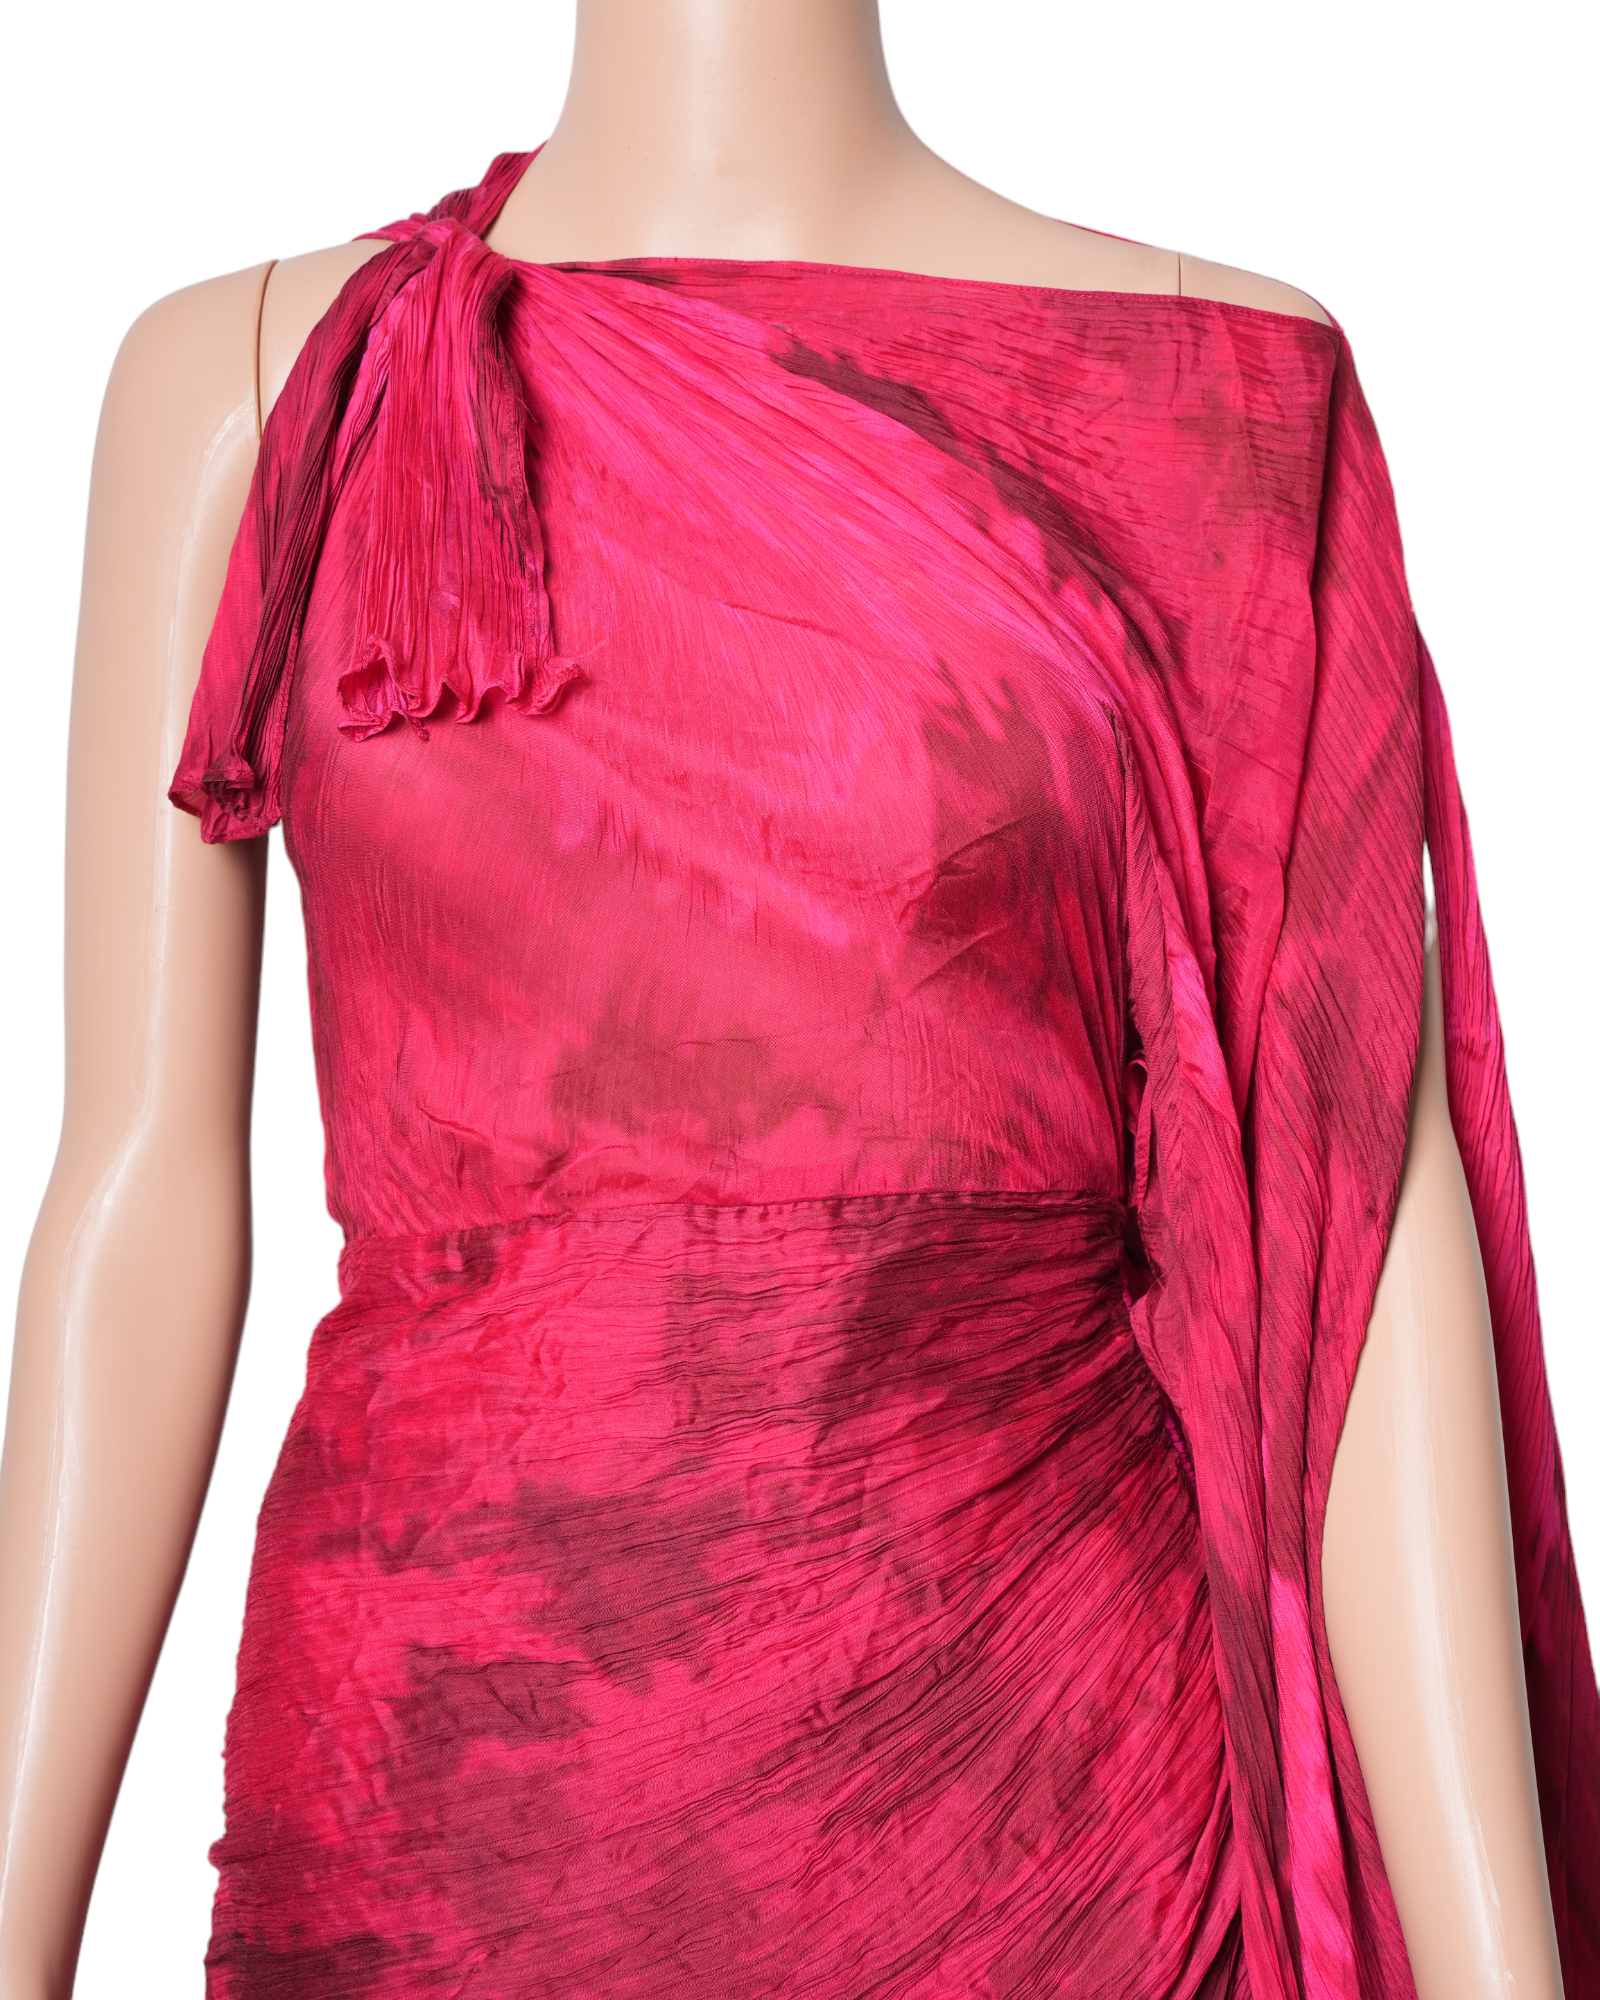 Saaksha & Kinni Multicoloured Printed Pleated Draped Dress